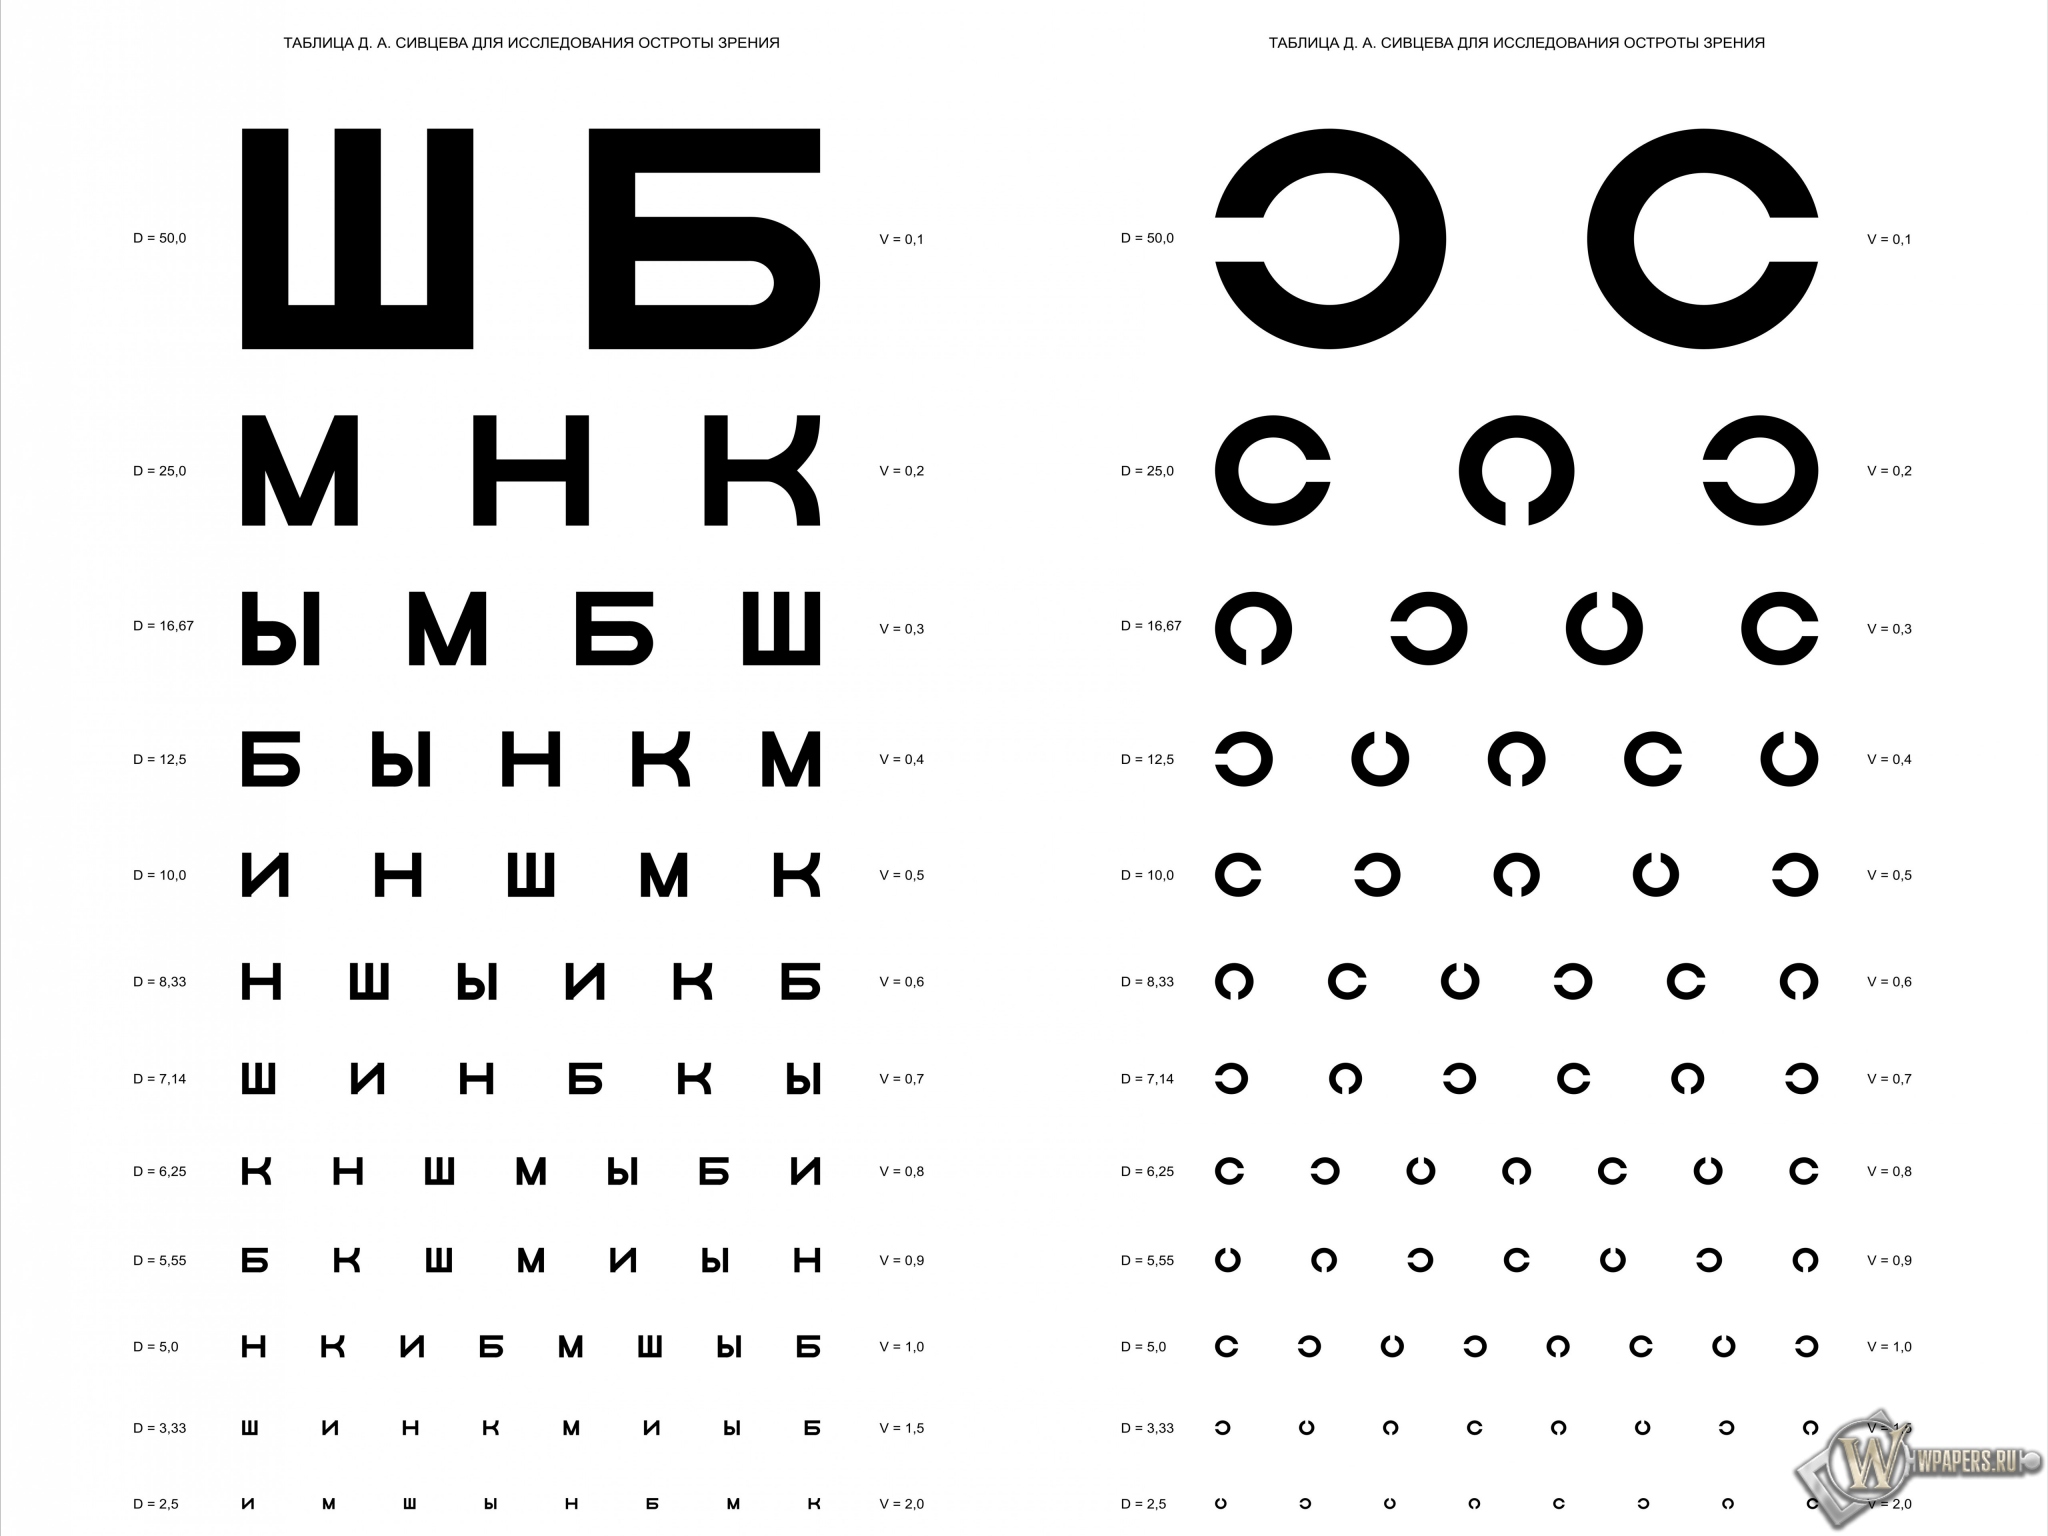 Таблица Д.А. Сивцева для проверки зрения 2048x1536